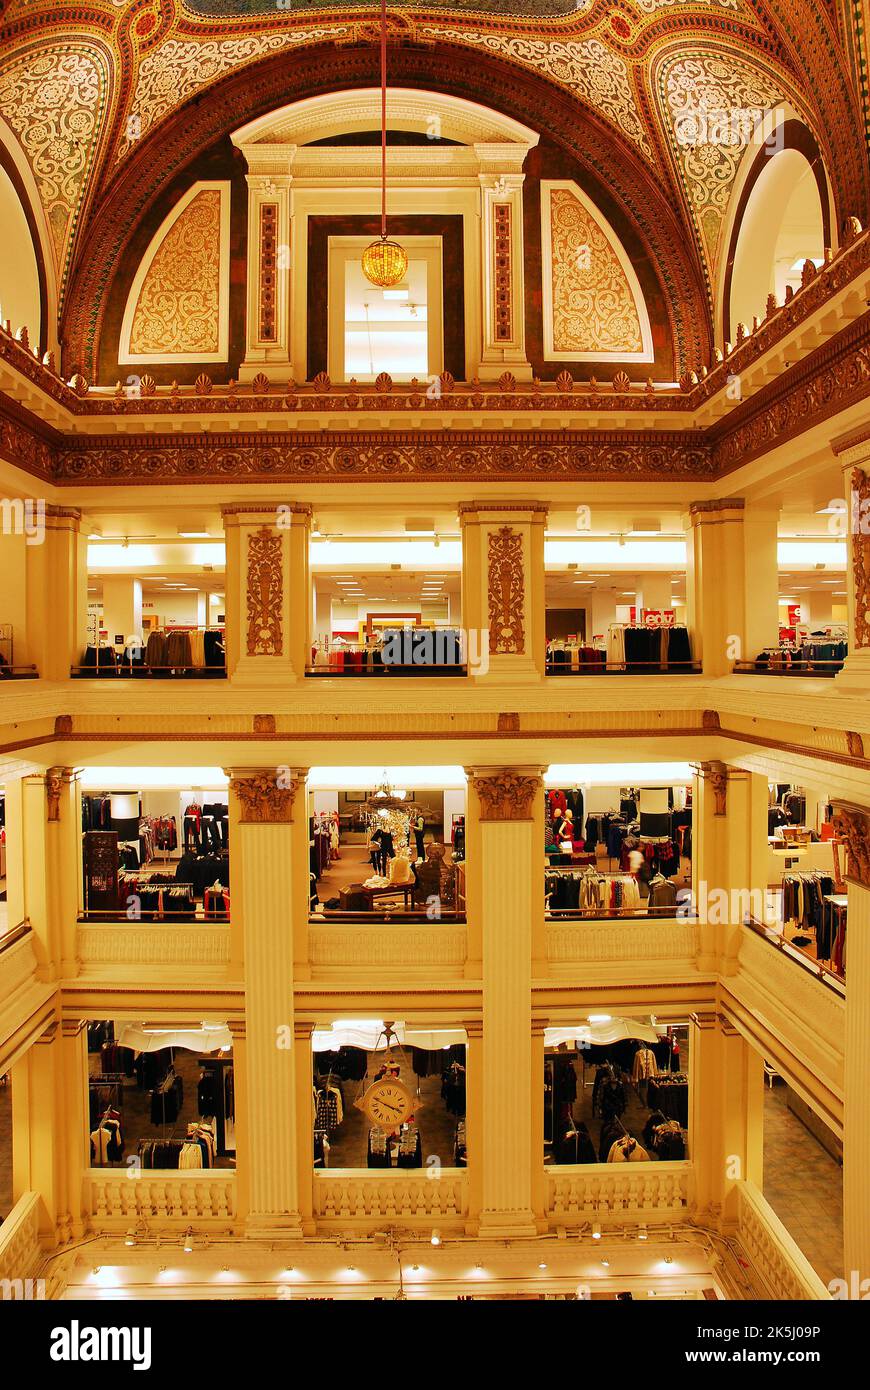 L'atrium intérieur à plusieurs étages de Macys, anciennement Marshall Fields Department Store de Chicago, est décoré de mosaïques et de carreaux sur les murs Banque D'Images